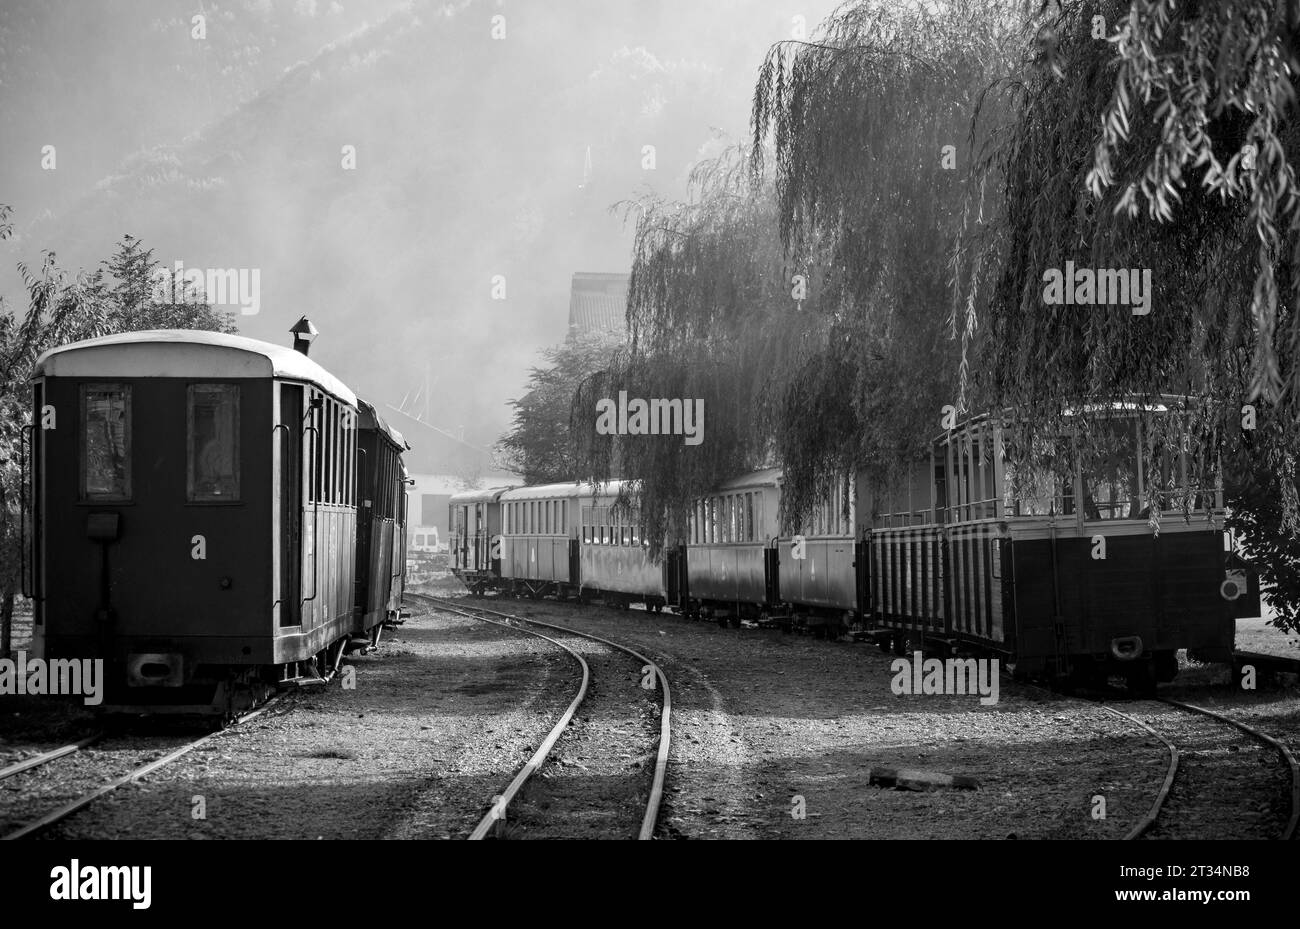 Dampfzüge warten auf Passagiere im Bahnhof Stockfoto